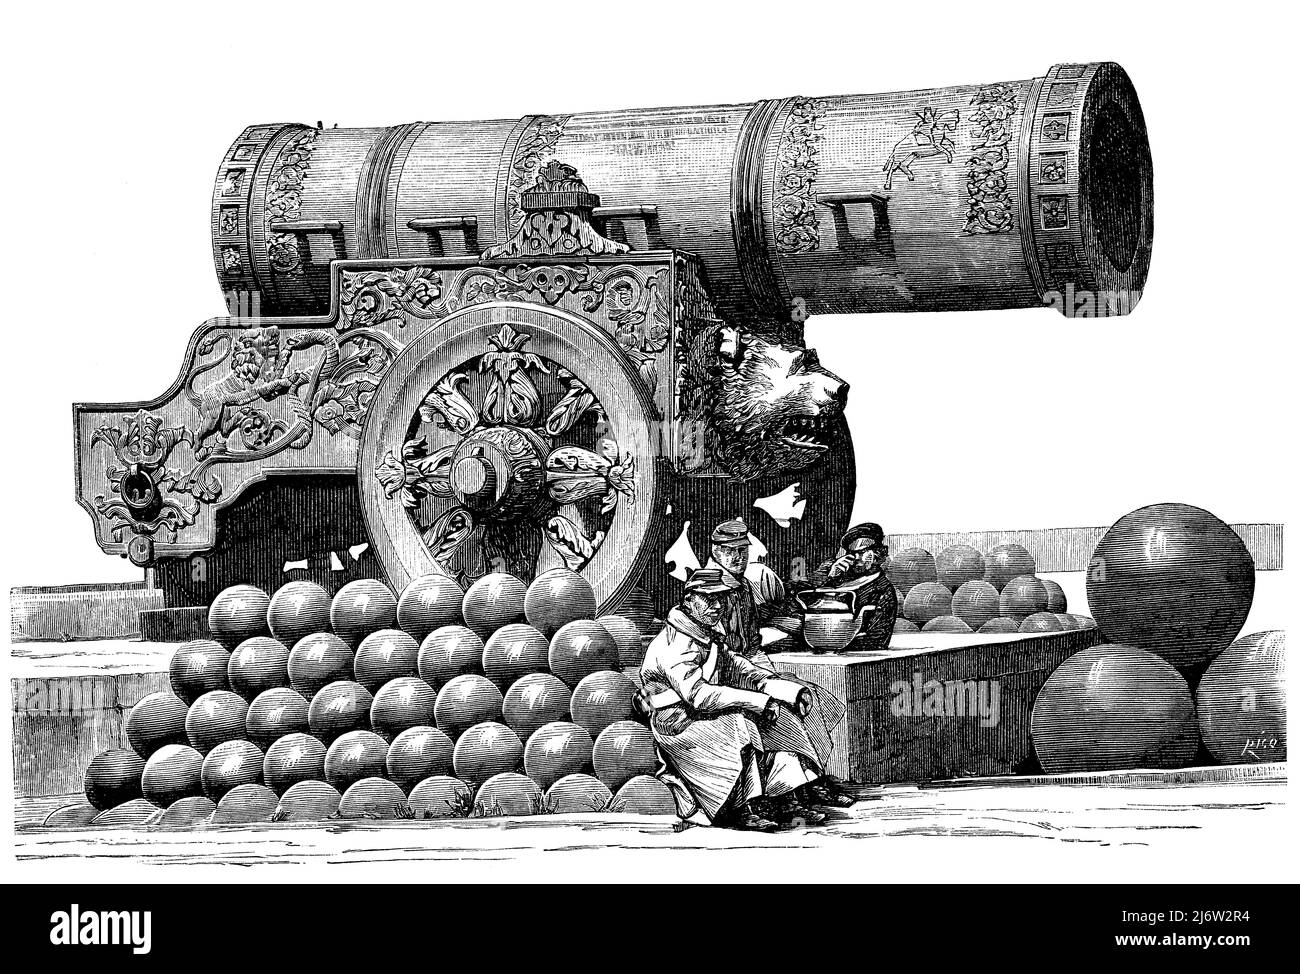 Rusia. Moscú. El rey de los cañones en el Kremlin, fundido en 1586; también conocido como el cañón del zar, construído por el maestro de fundición Andrei Chokhov (1545-1629) por orden del zar Fiodor I Ivanovich (1557-1598). Grabado de 1877. Stock Photo